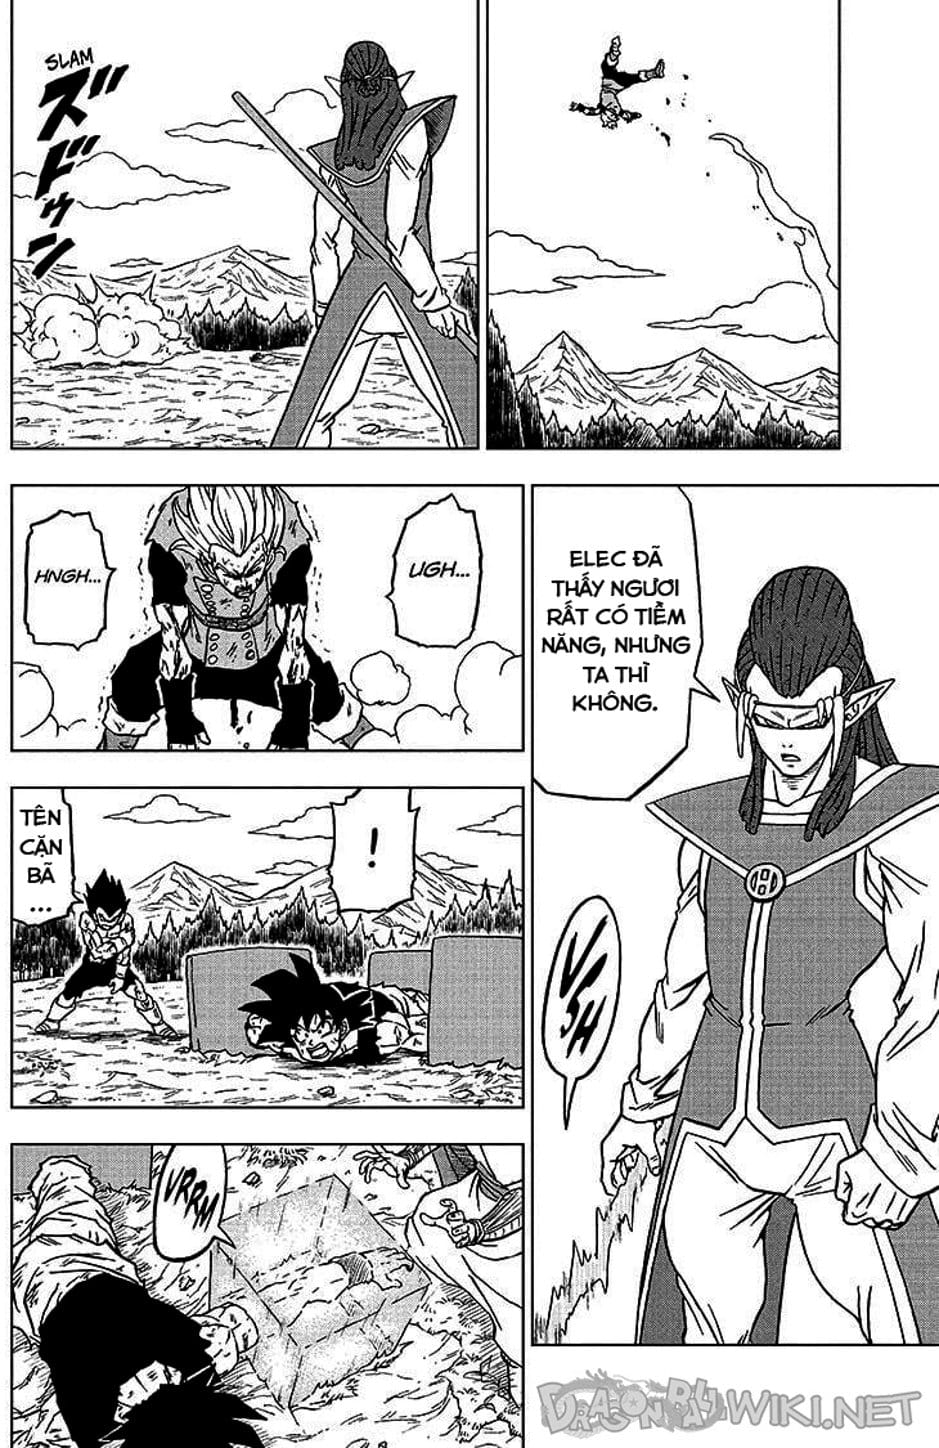 Truyện Tranh Truy Tìm Ngọc Rồng Siêu Cấp - Dragon Ball Super trang 3136